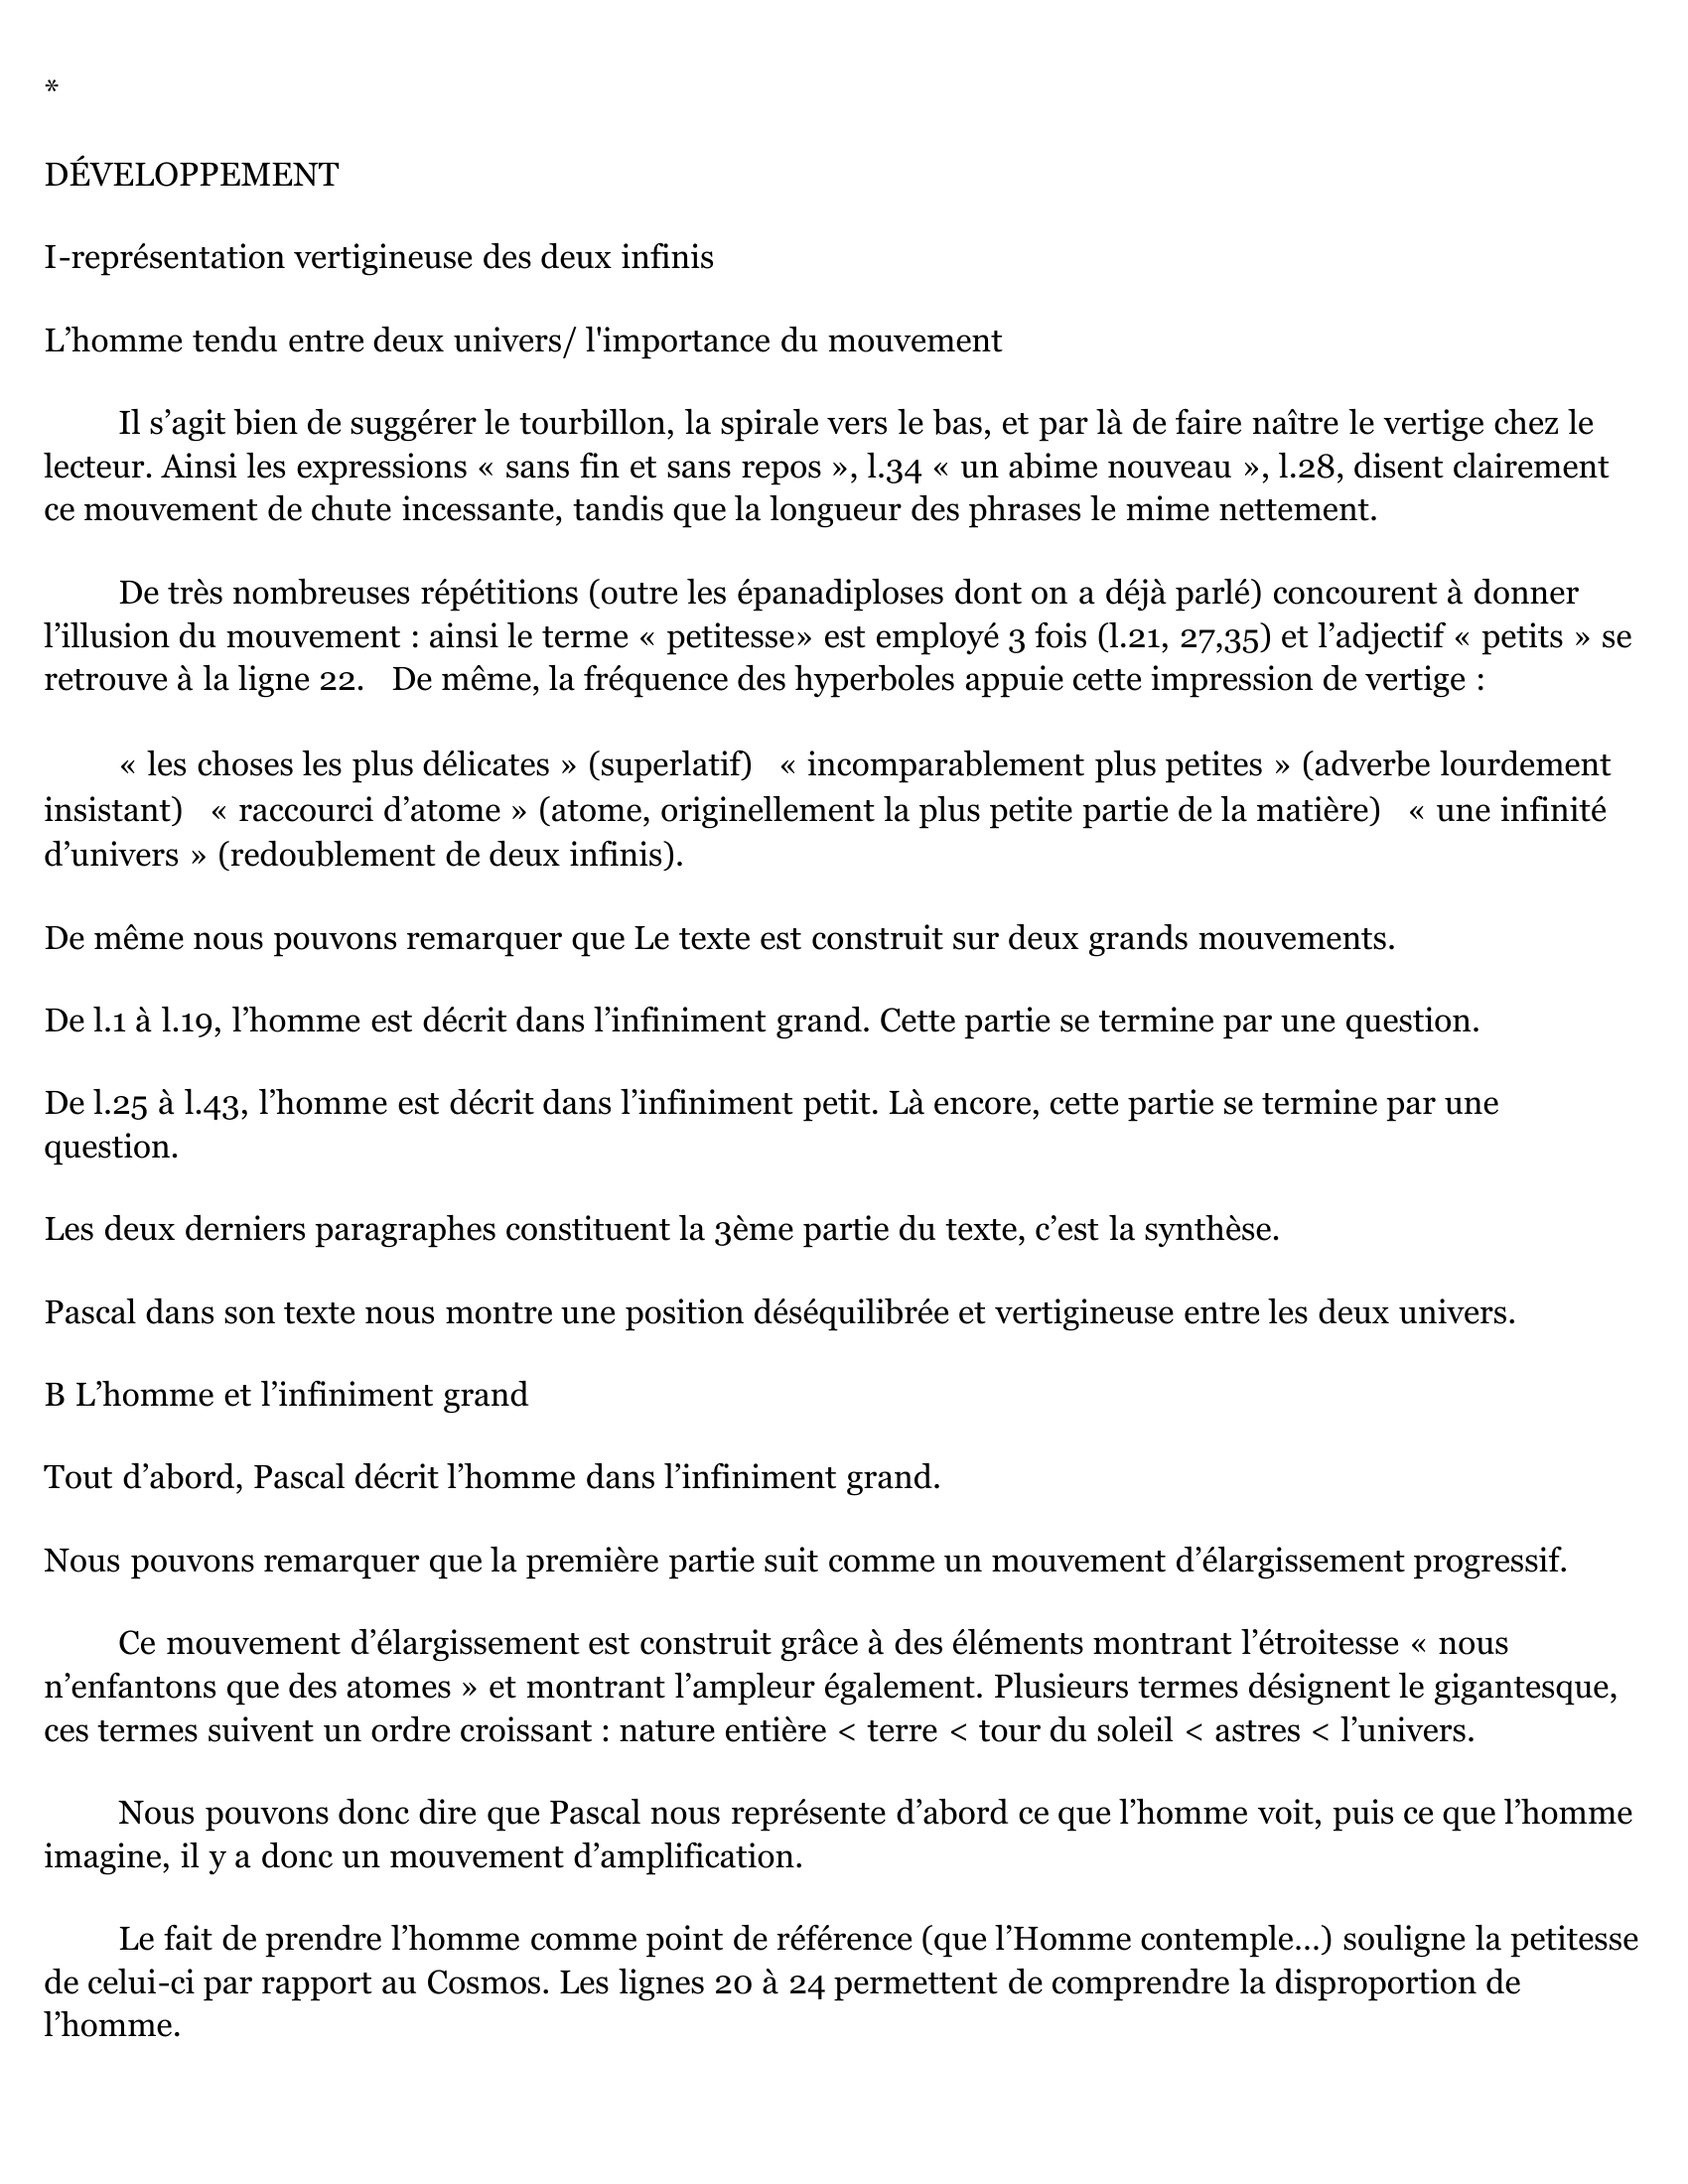 Prévisualisation du document LECTURE ANALYTIQUE: Extrait du fragment 185 « Disproportion de l’Homme » in Pensées 1670 de Blaise Pascal